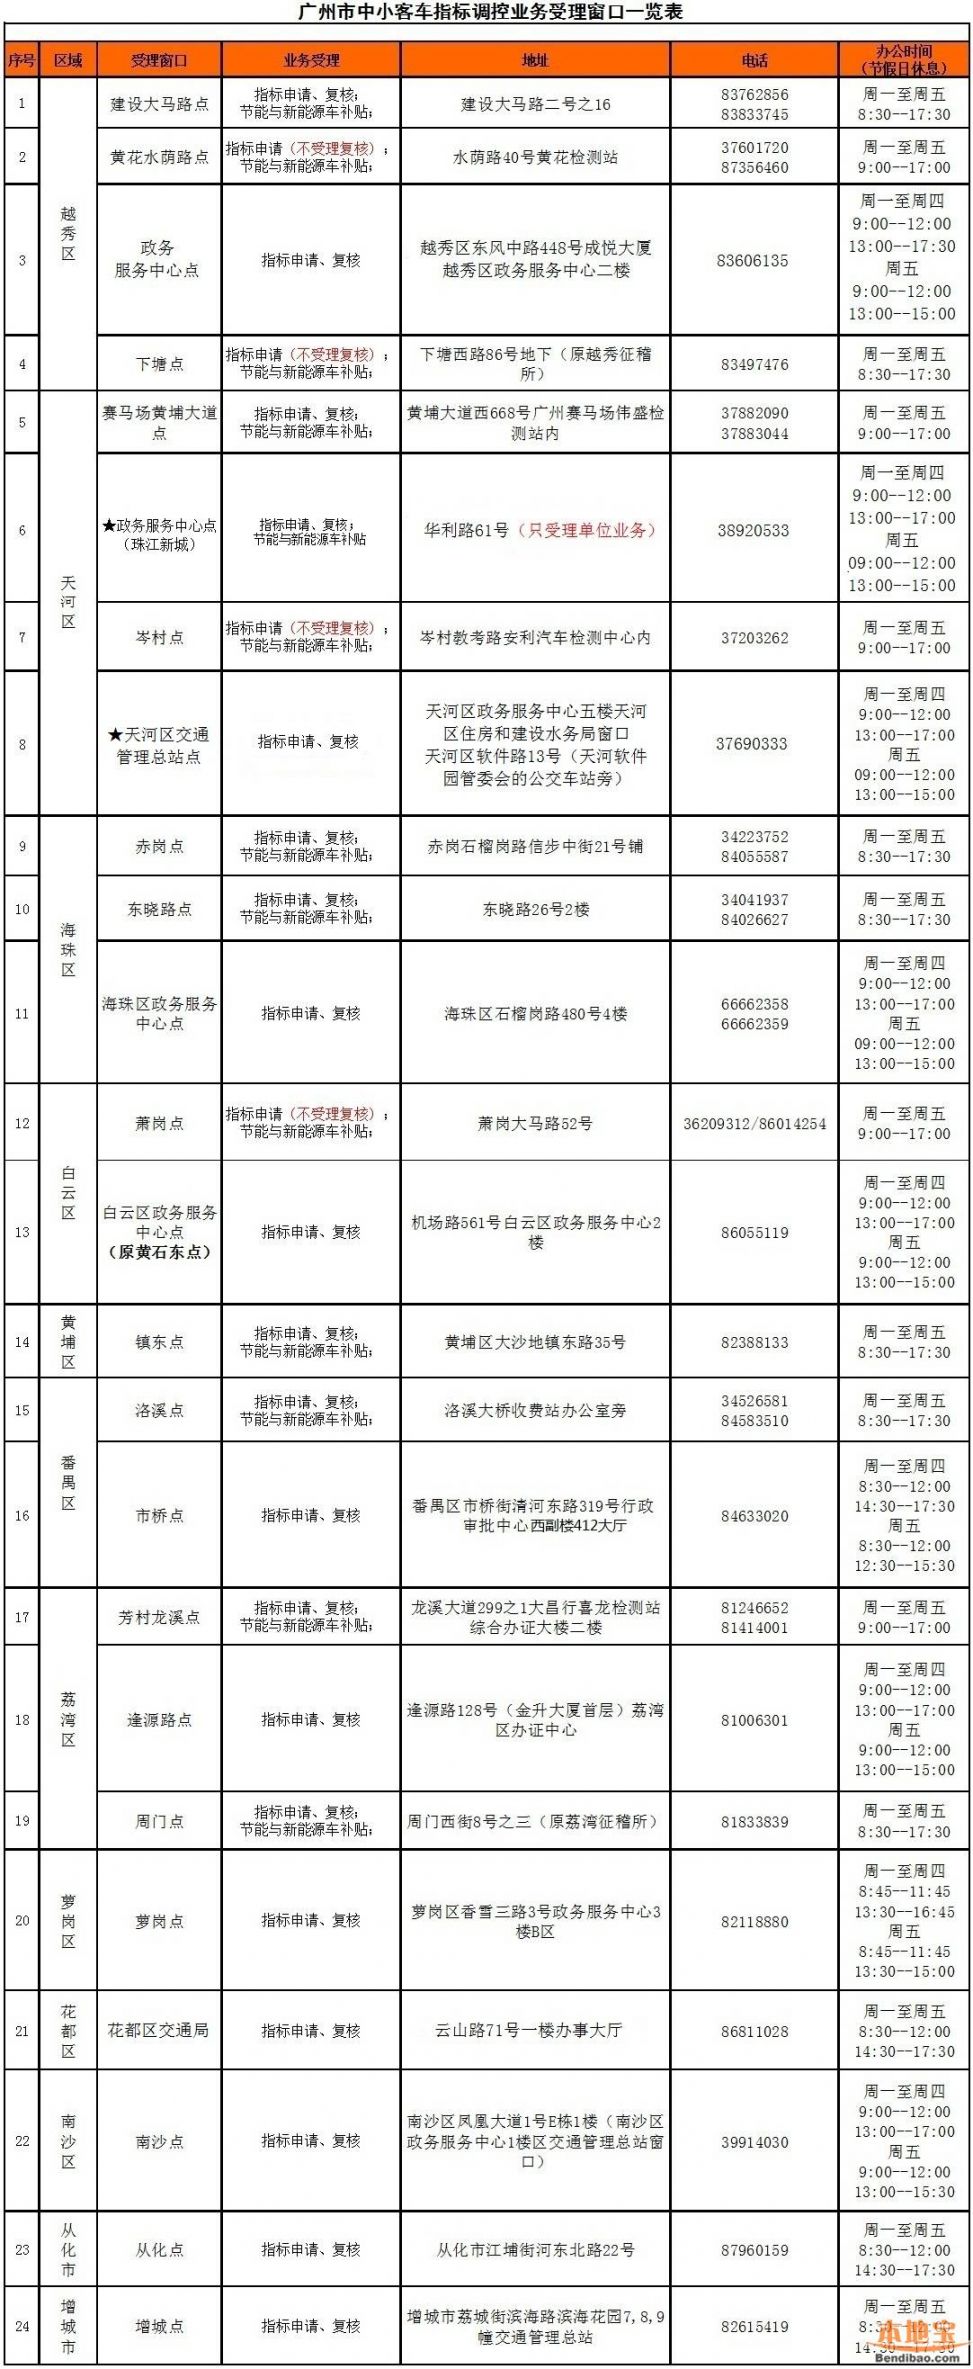 2017广州市中小客车指标调控业务受理窗口一